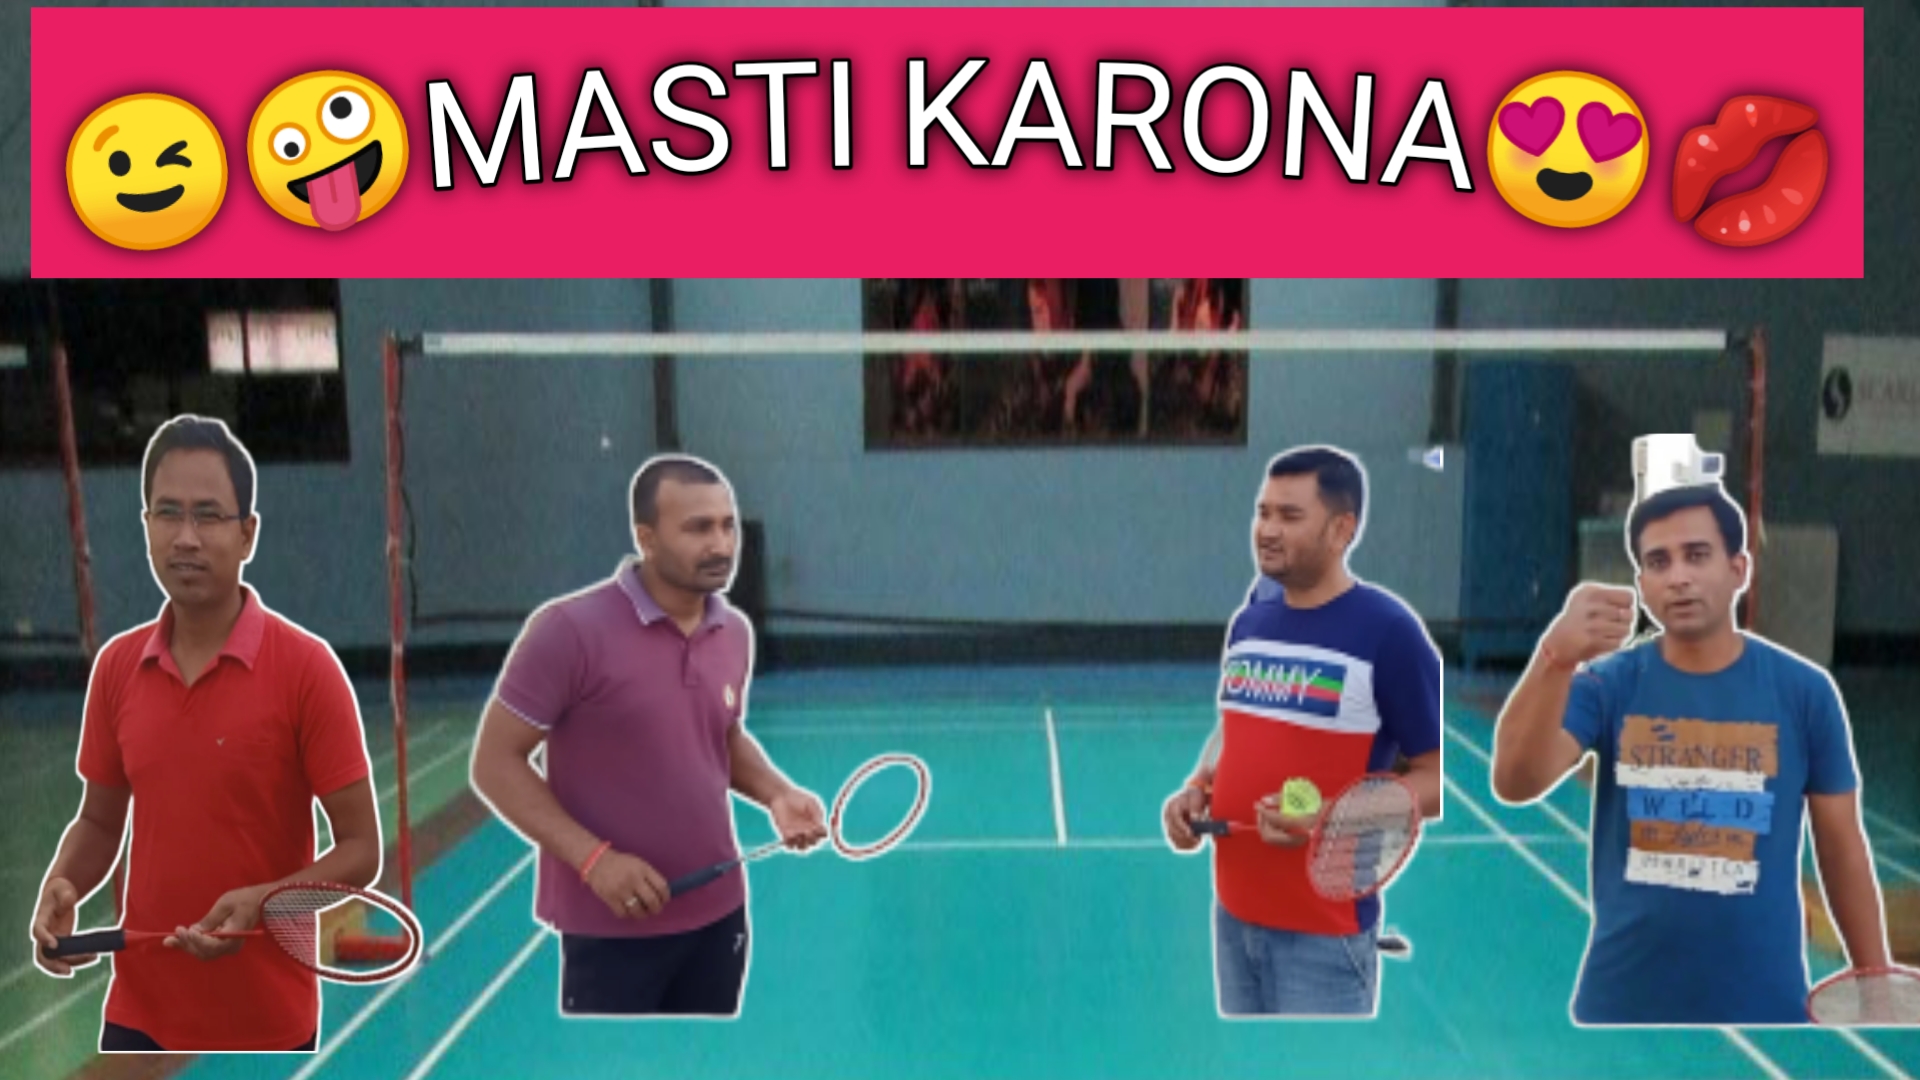 Masti karona - Fun on Badminton